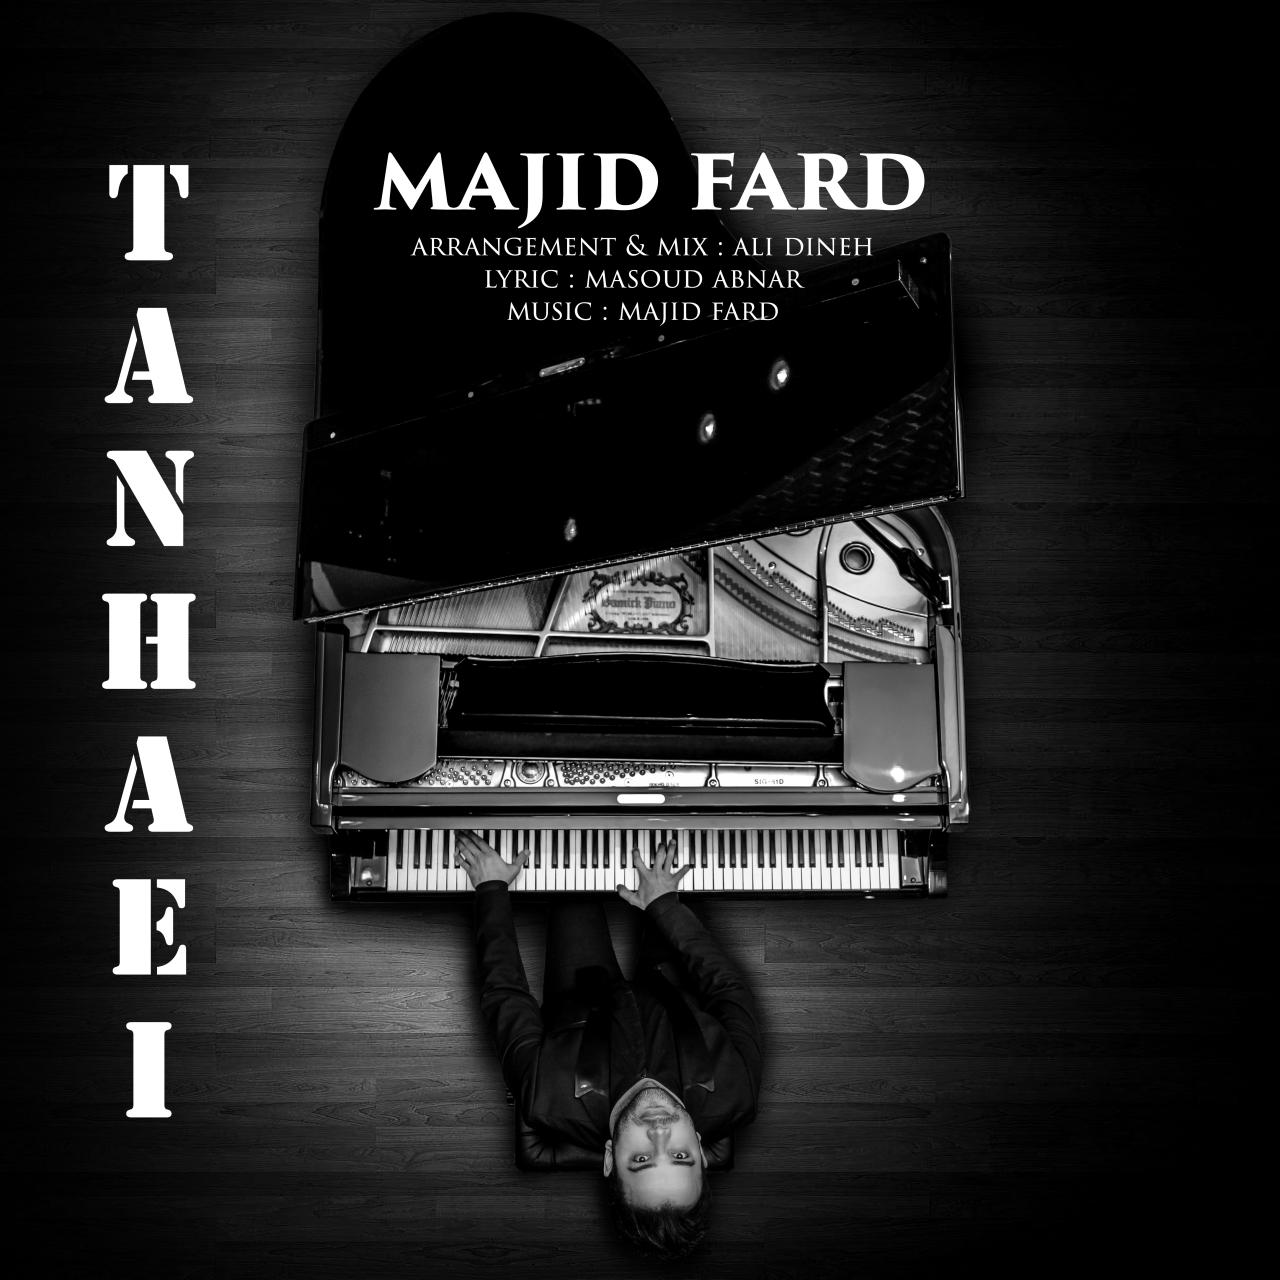  دانلود آهنگ جدید مجید فرد - تنهایی | Download New Music By Majid Fard - Tanhaei